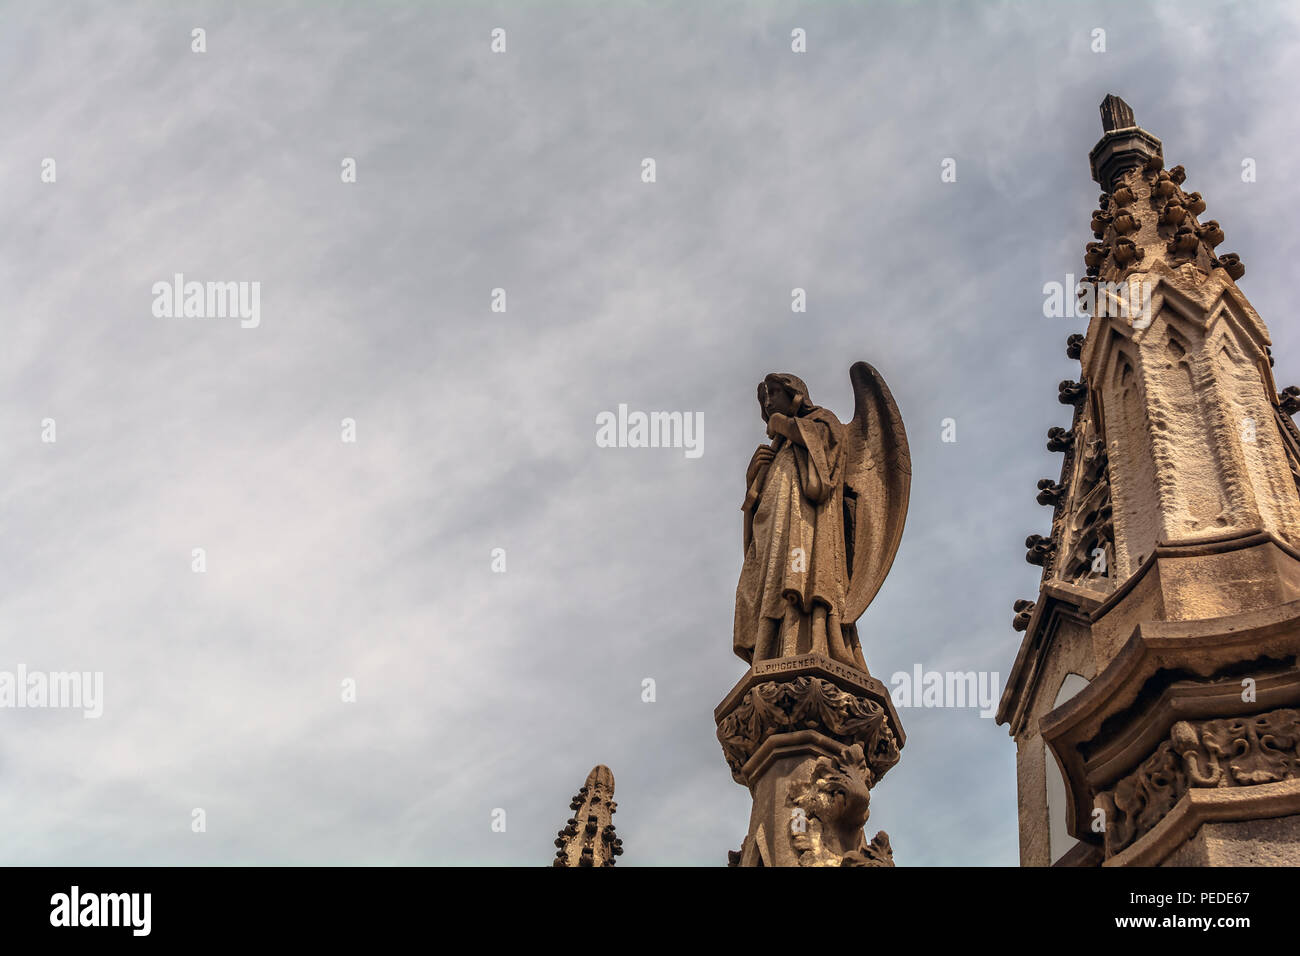 Die gotische Skulptur gegen den dunklen Himmel in Poblenou Friedhof. Friedlich, aber makaber, Friedhof von Poblenou ist heute unglaubliche Skulpturen Stockfoto